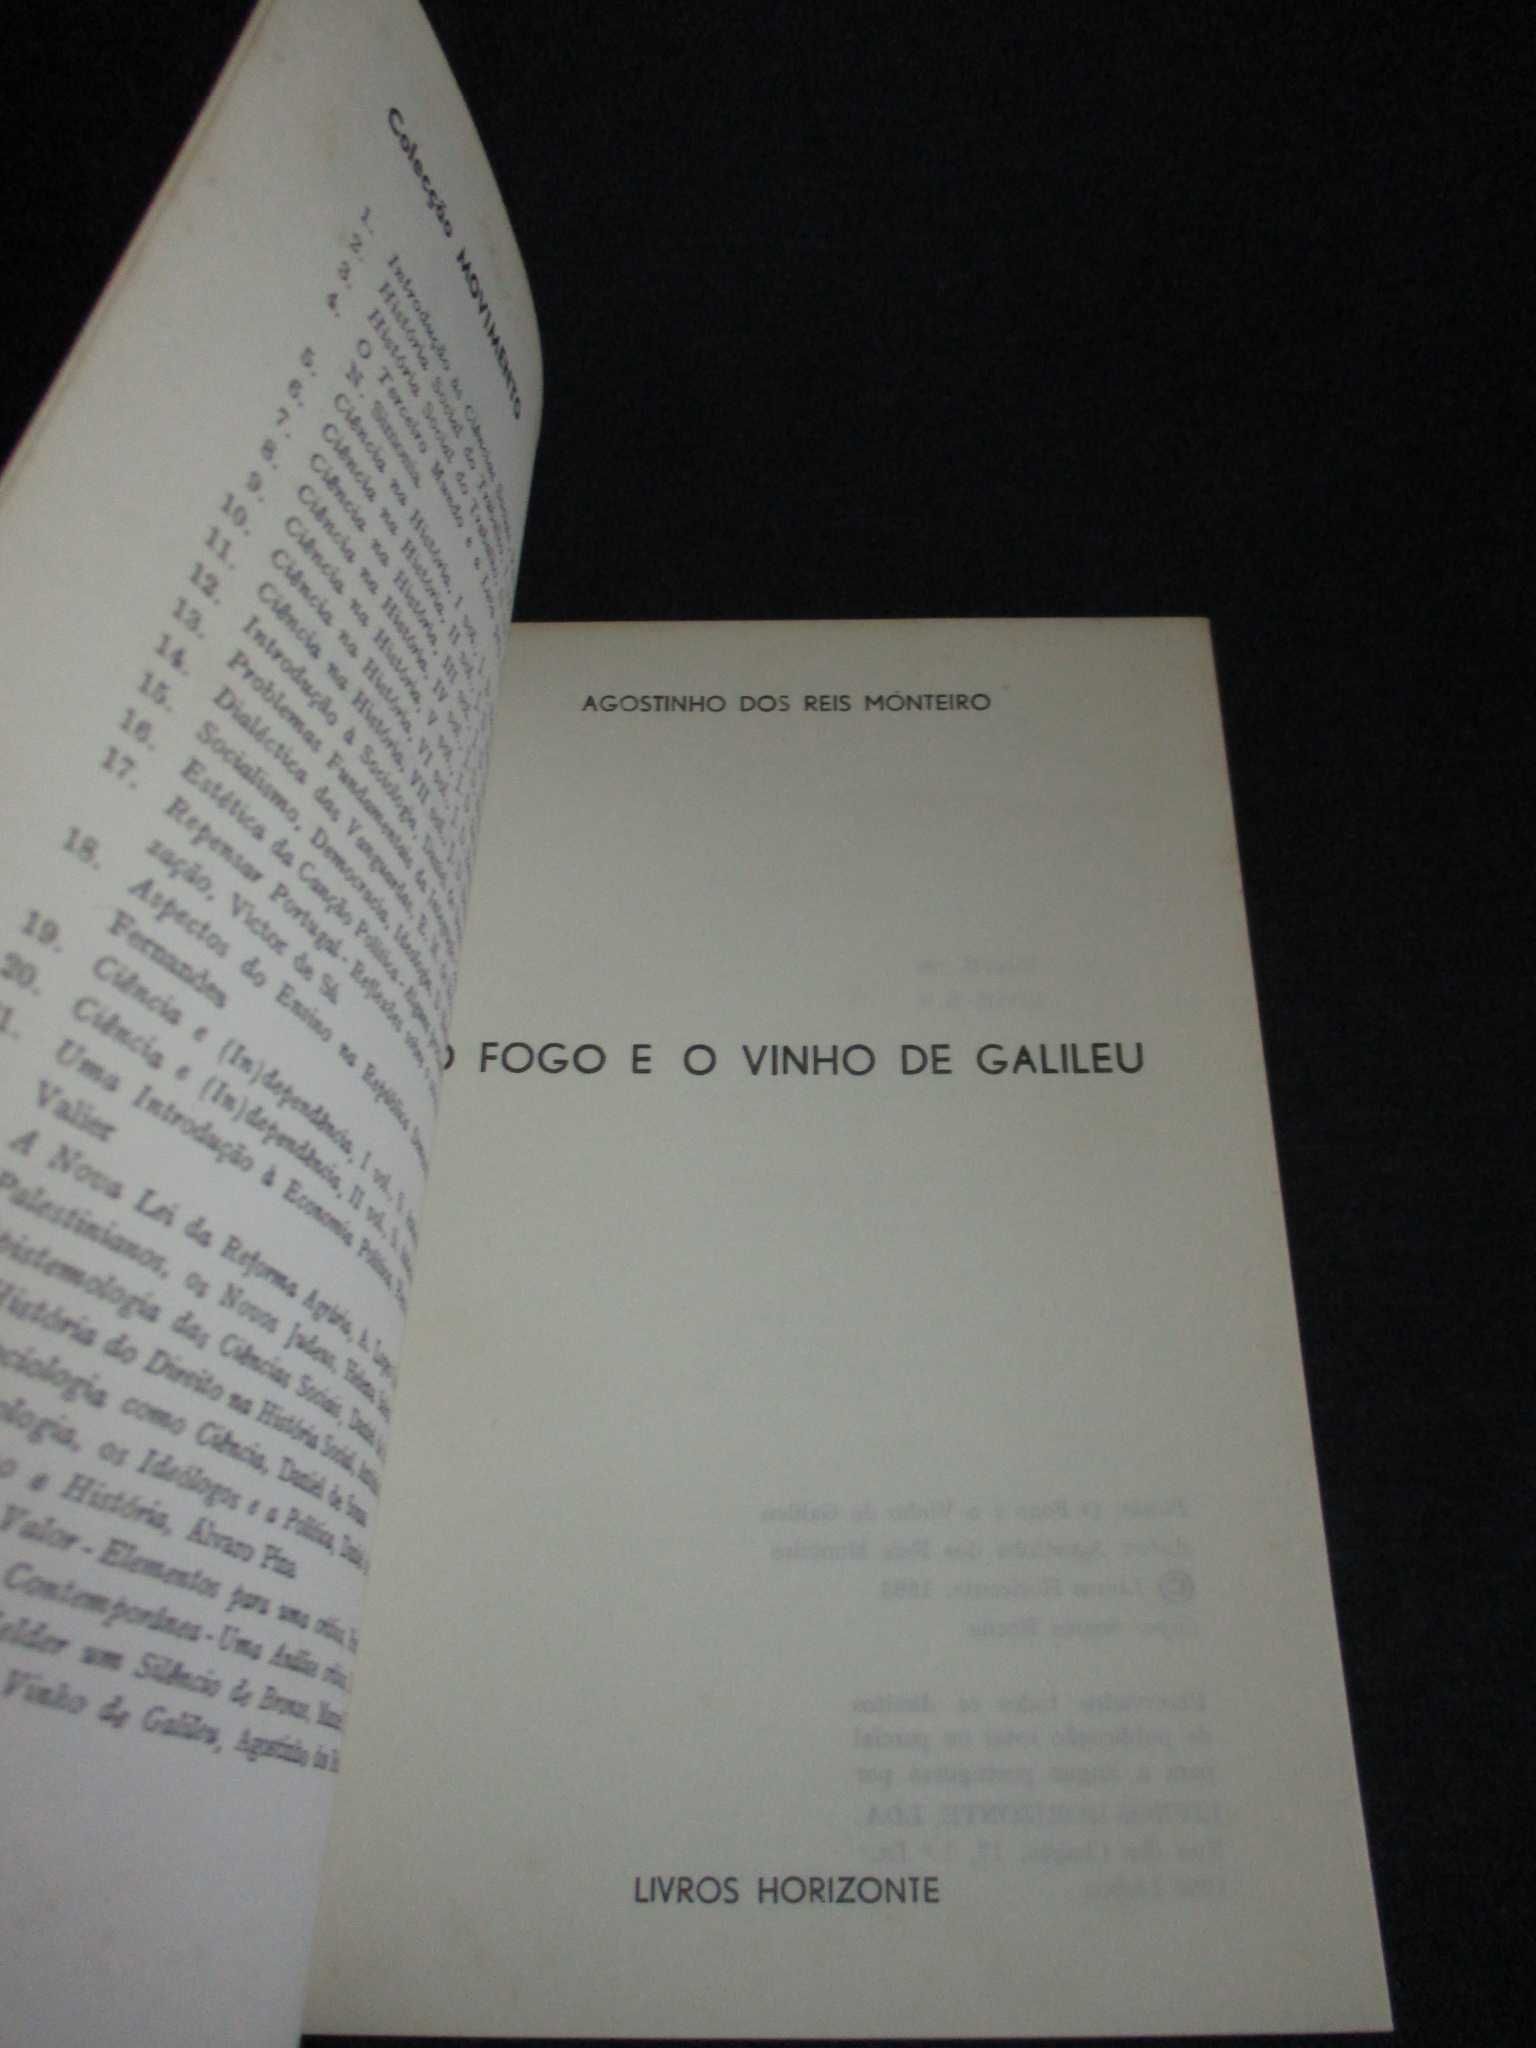 Livro O Fogo e o Vinho de Galileu Agostinho dos Reis Monteiro